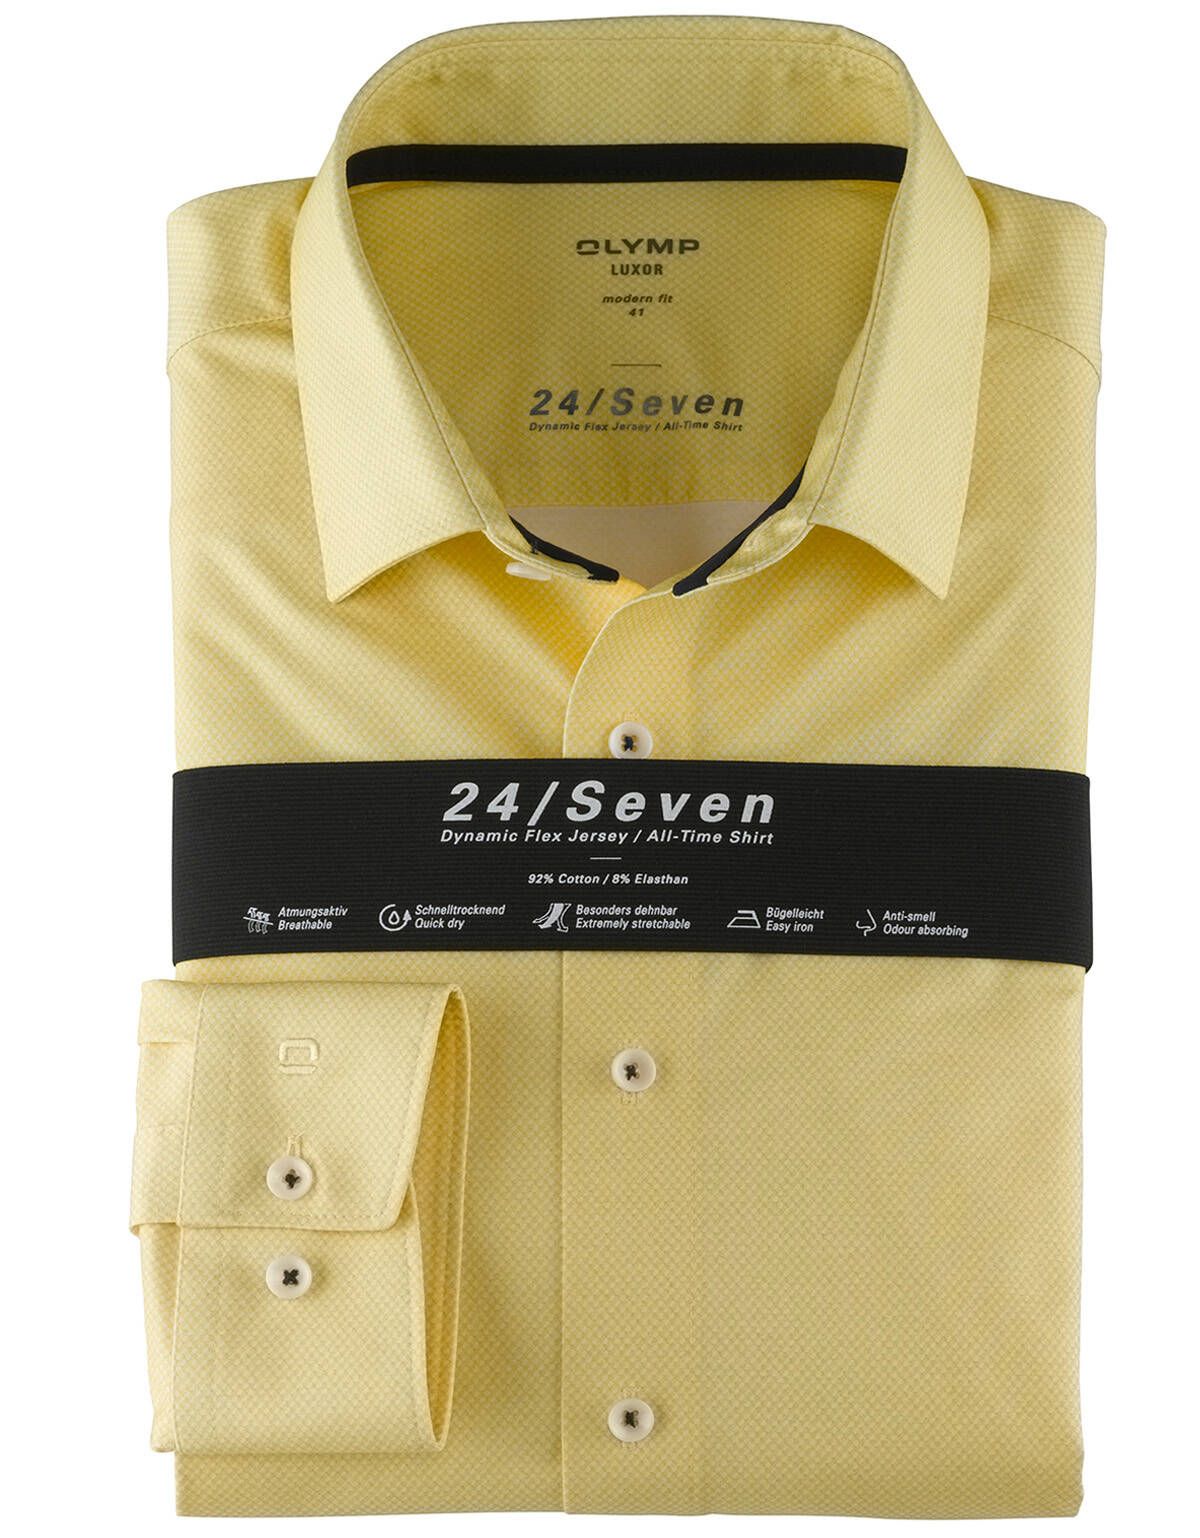 Трикотажная жёлтая рубашка OLYMP 24/7, modern fit[Желтый]